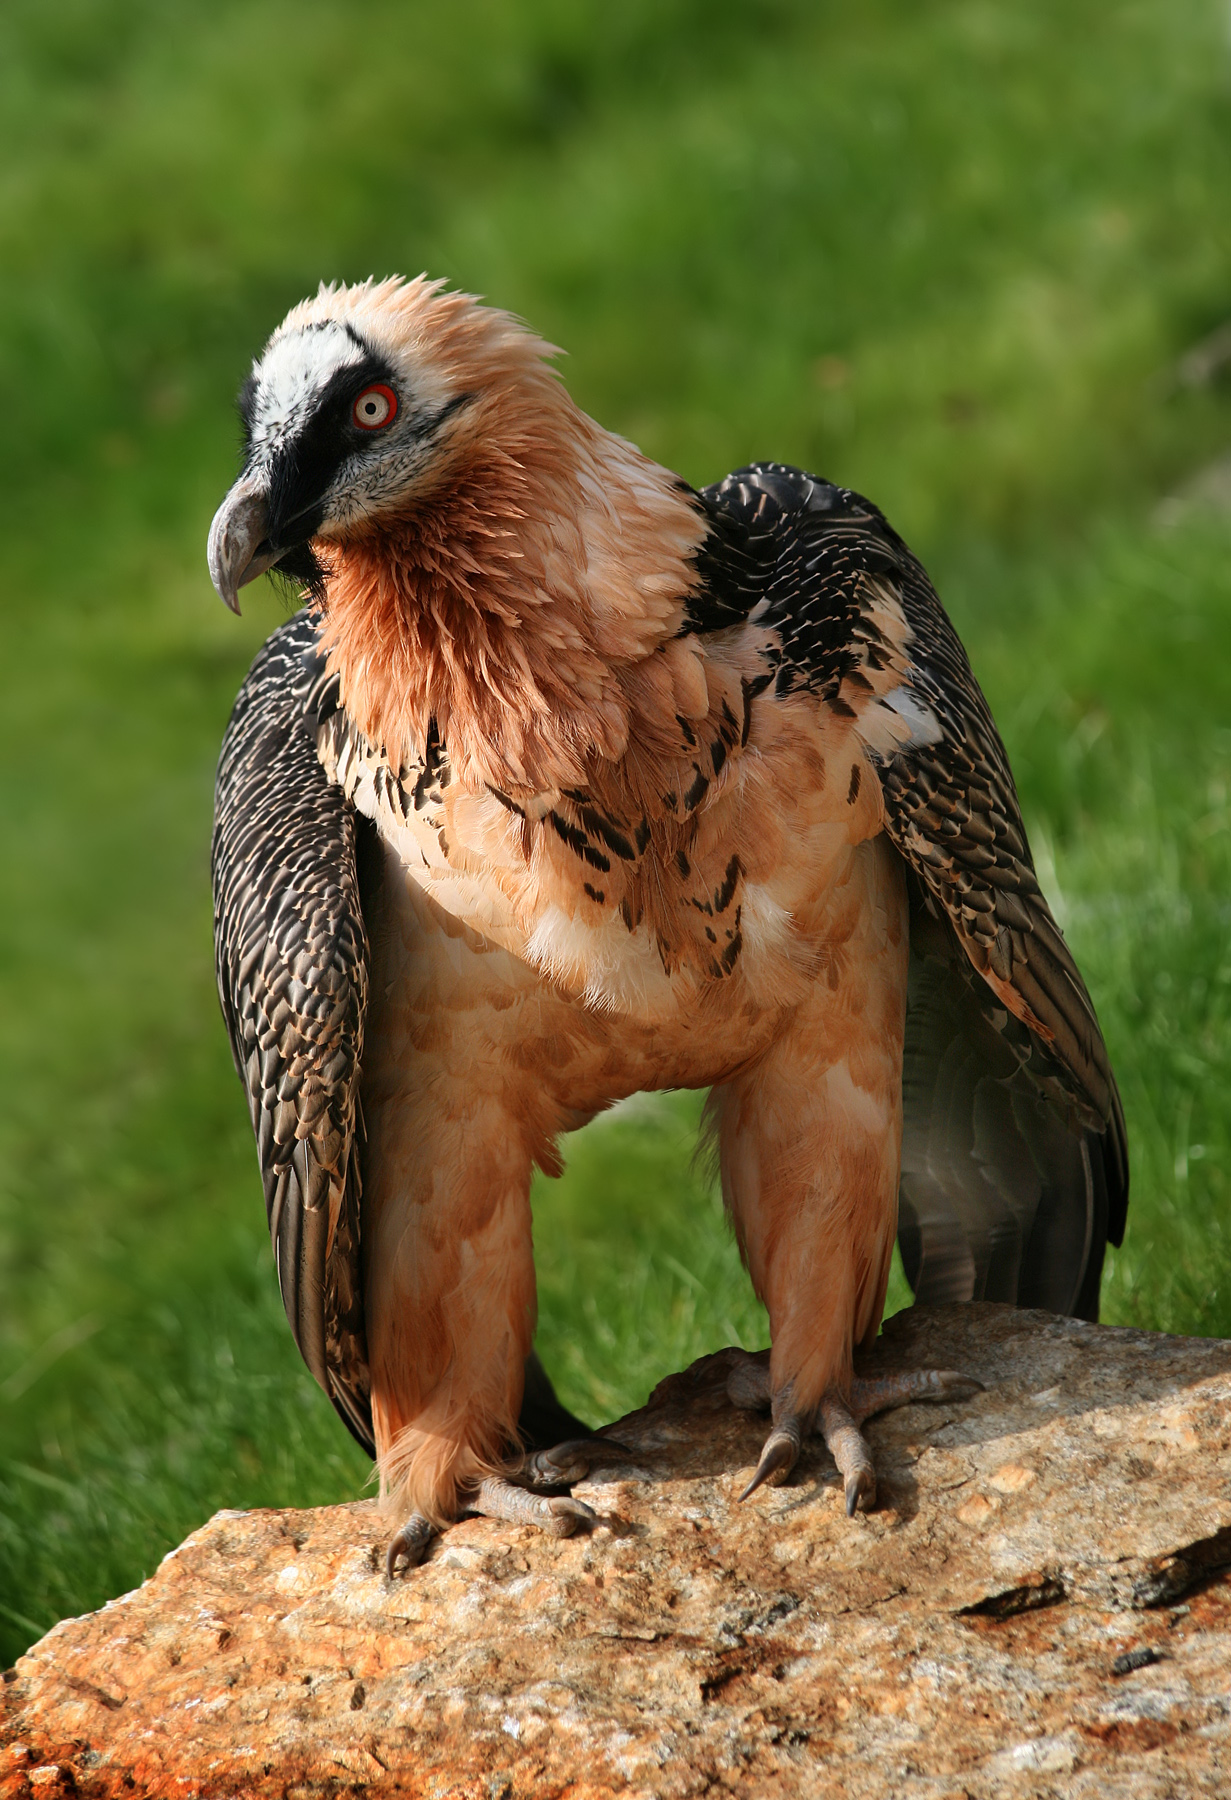 Do bearded vultures eat bones?